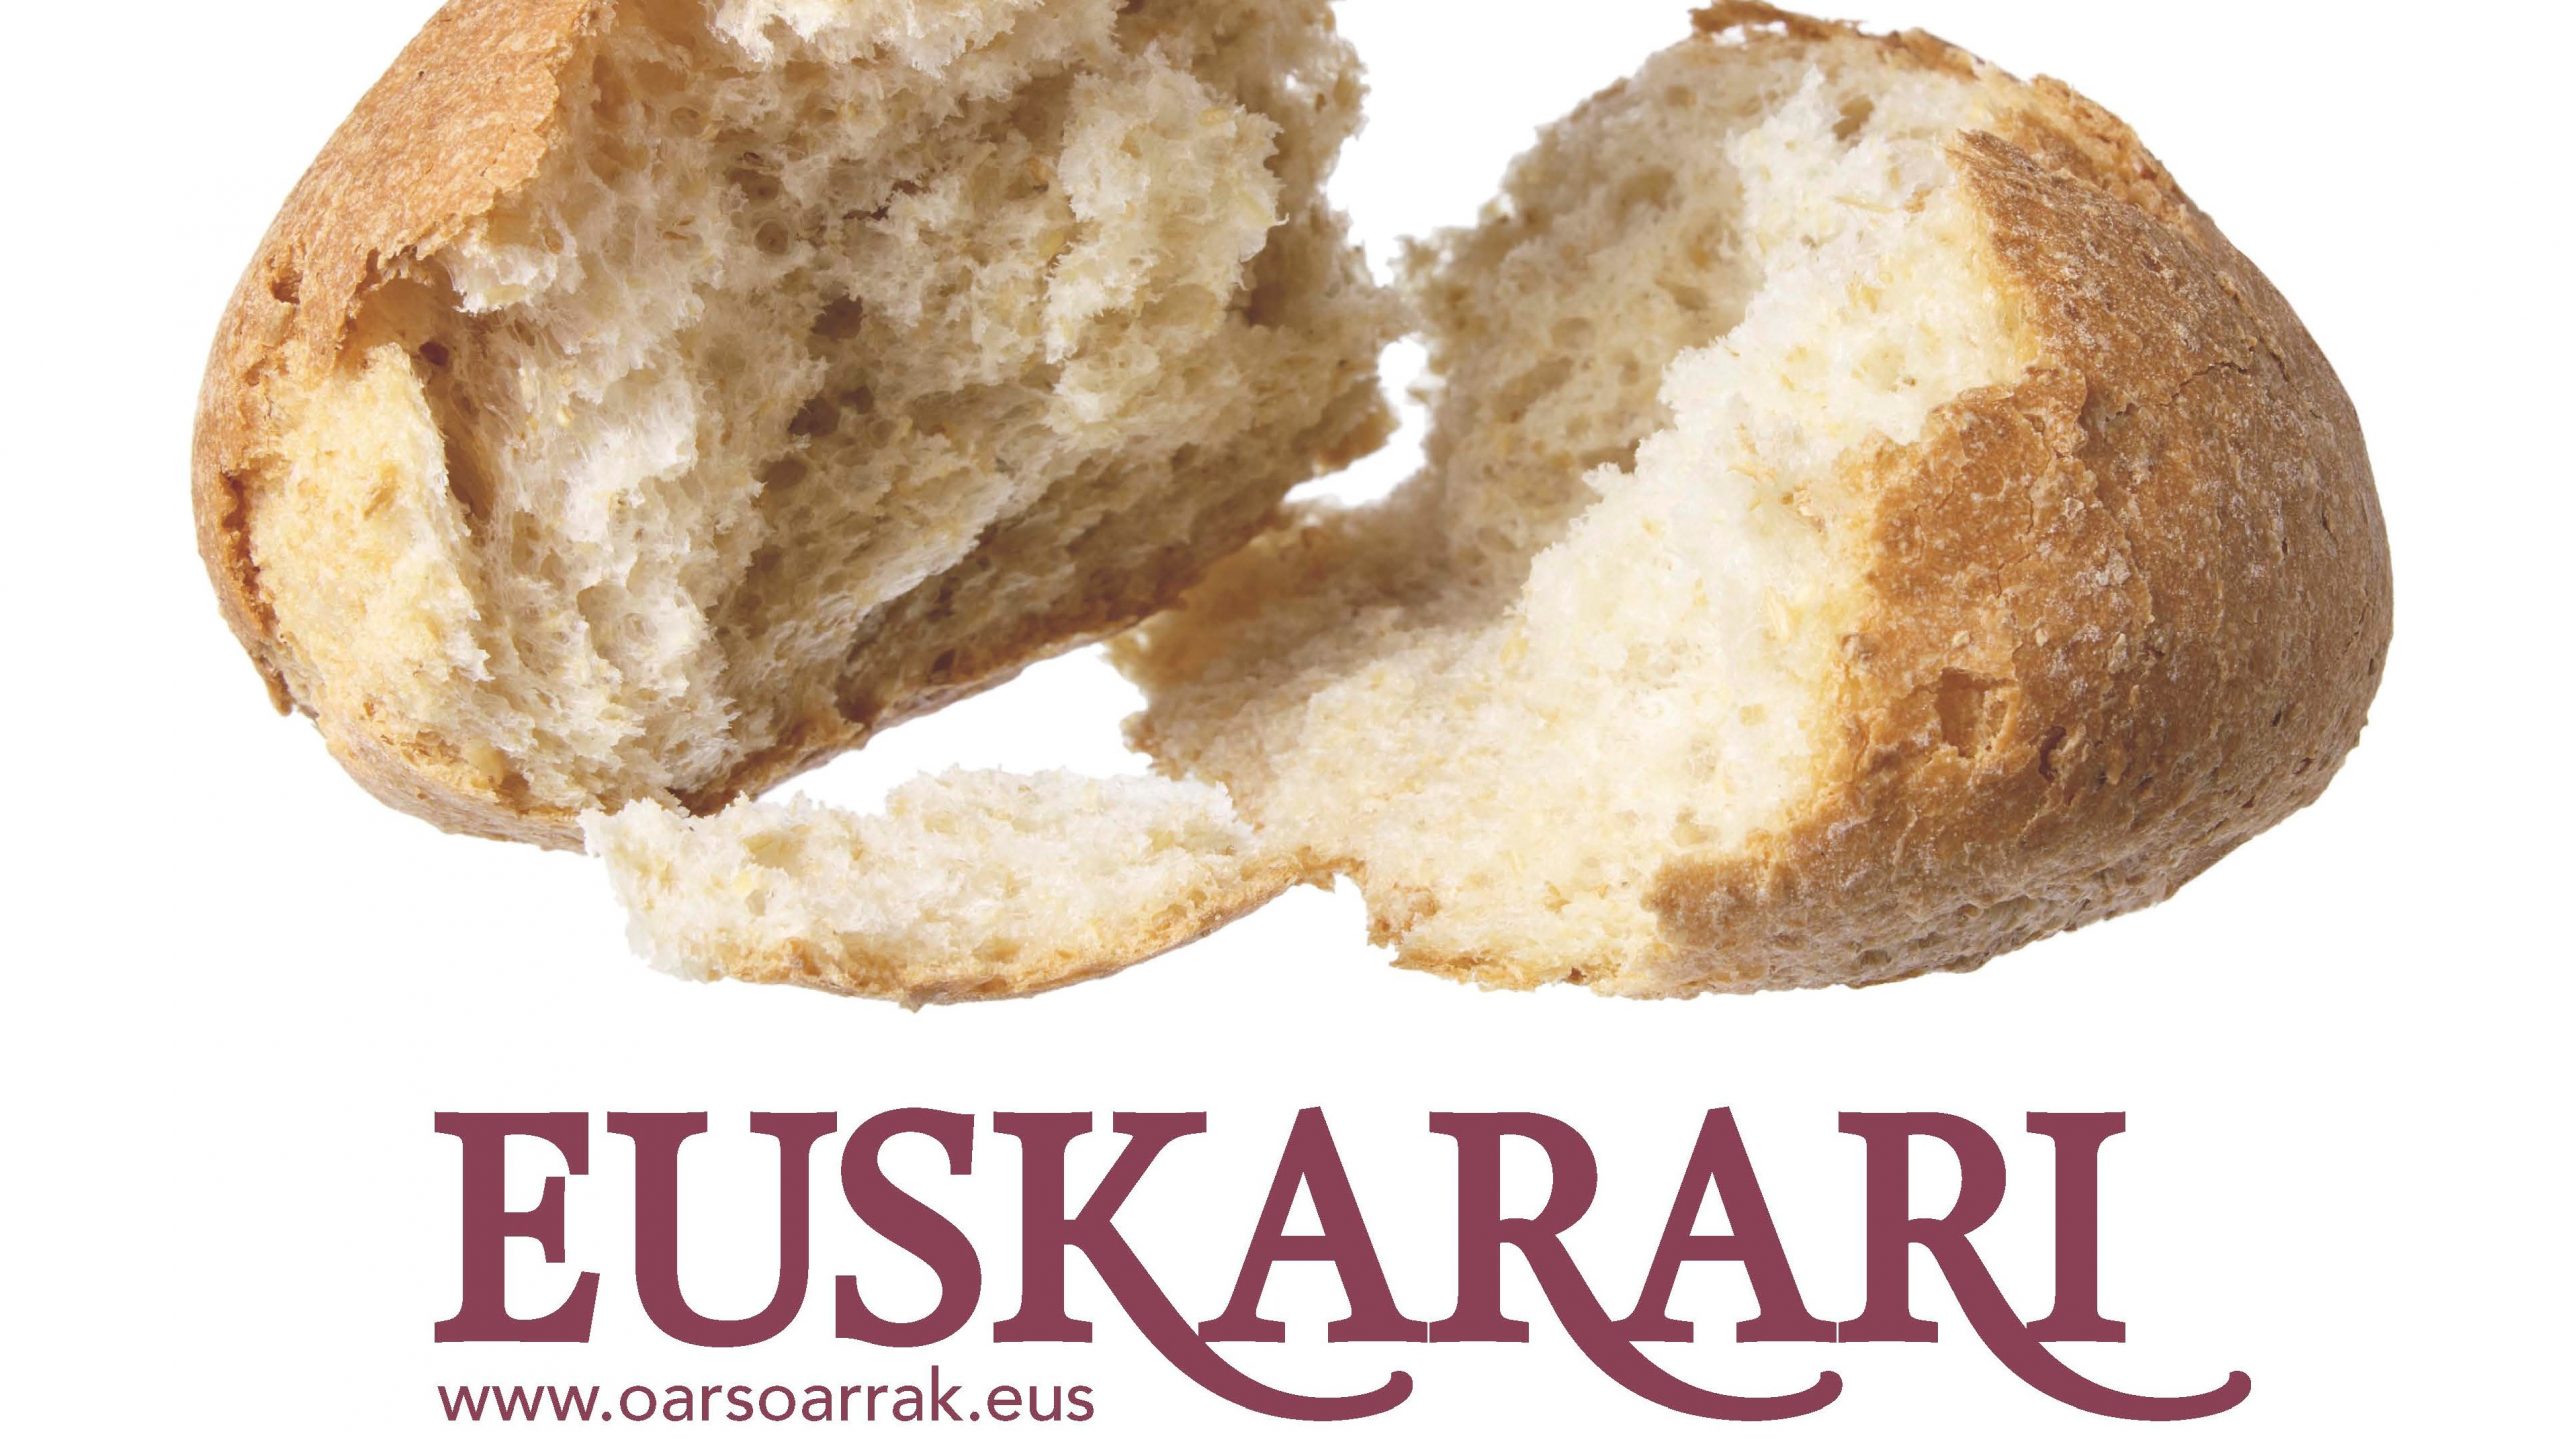 Hablar en euskera en las panaderías puede tener premio